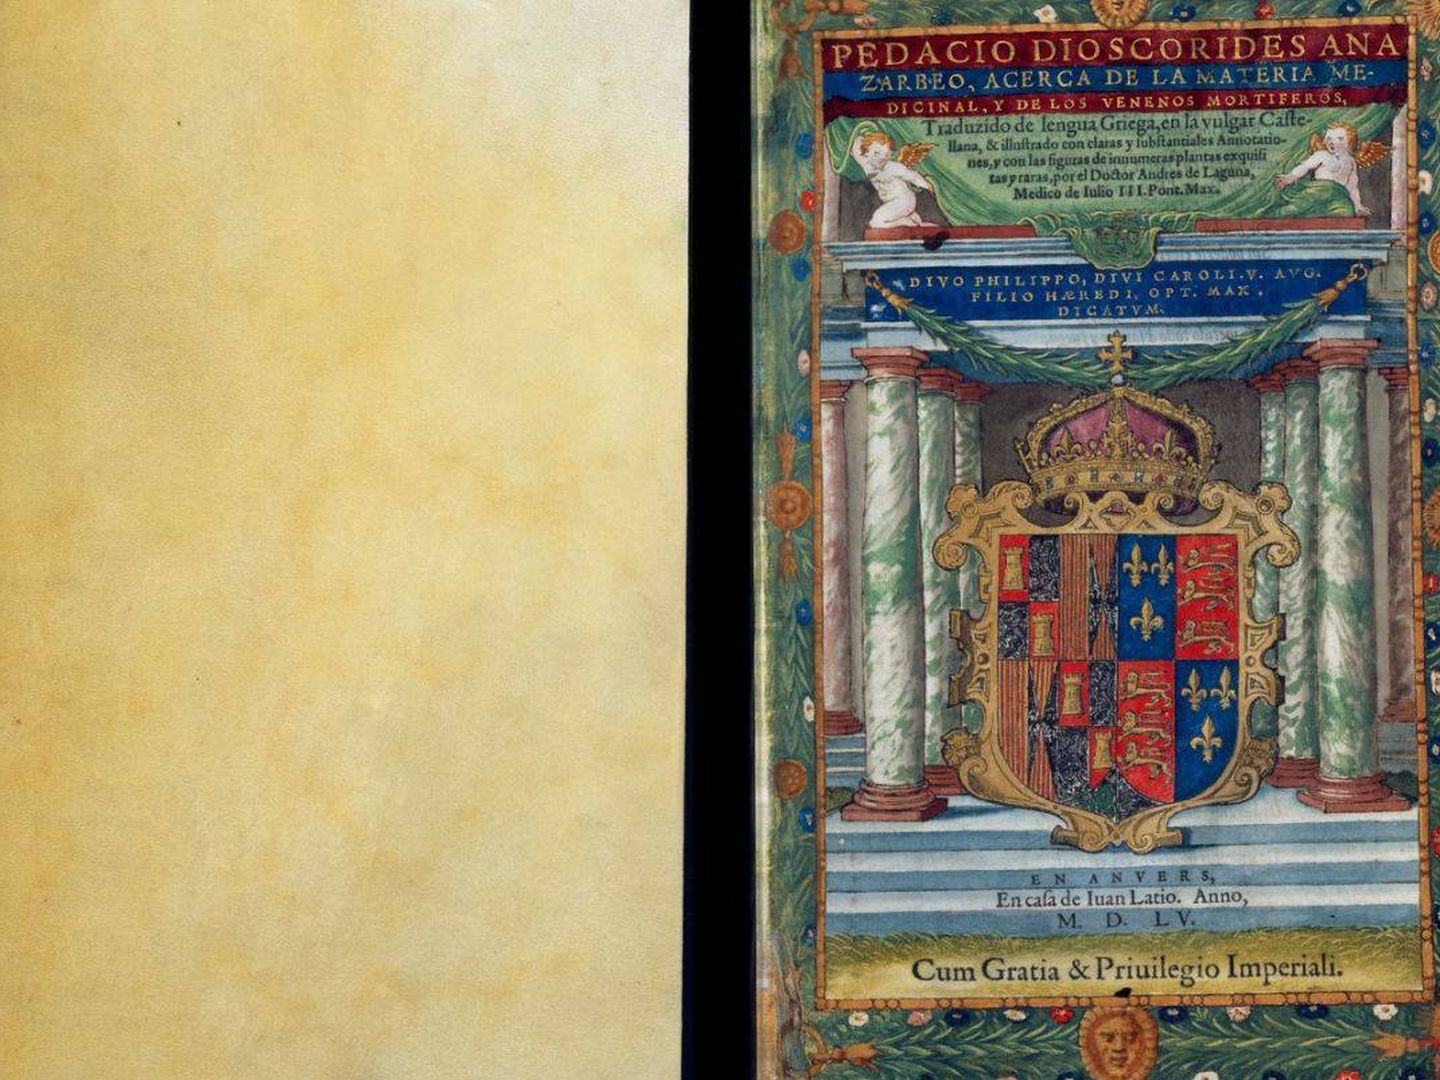 Portada de 'De Materia Médica' de la edición traducida al castellano por Andrés Laguna de 1555 y disponible en https://www.wdl.org/es/item/10632/